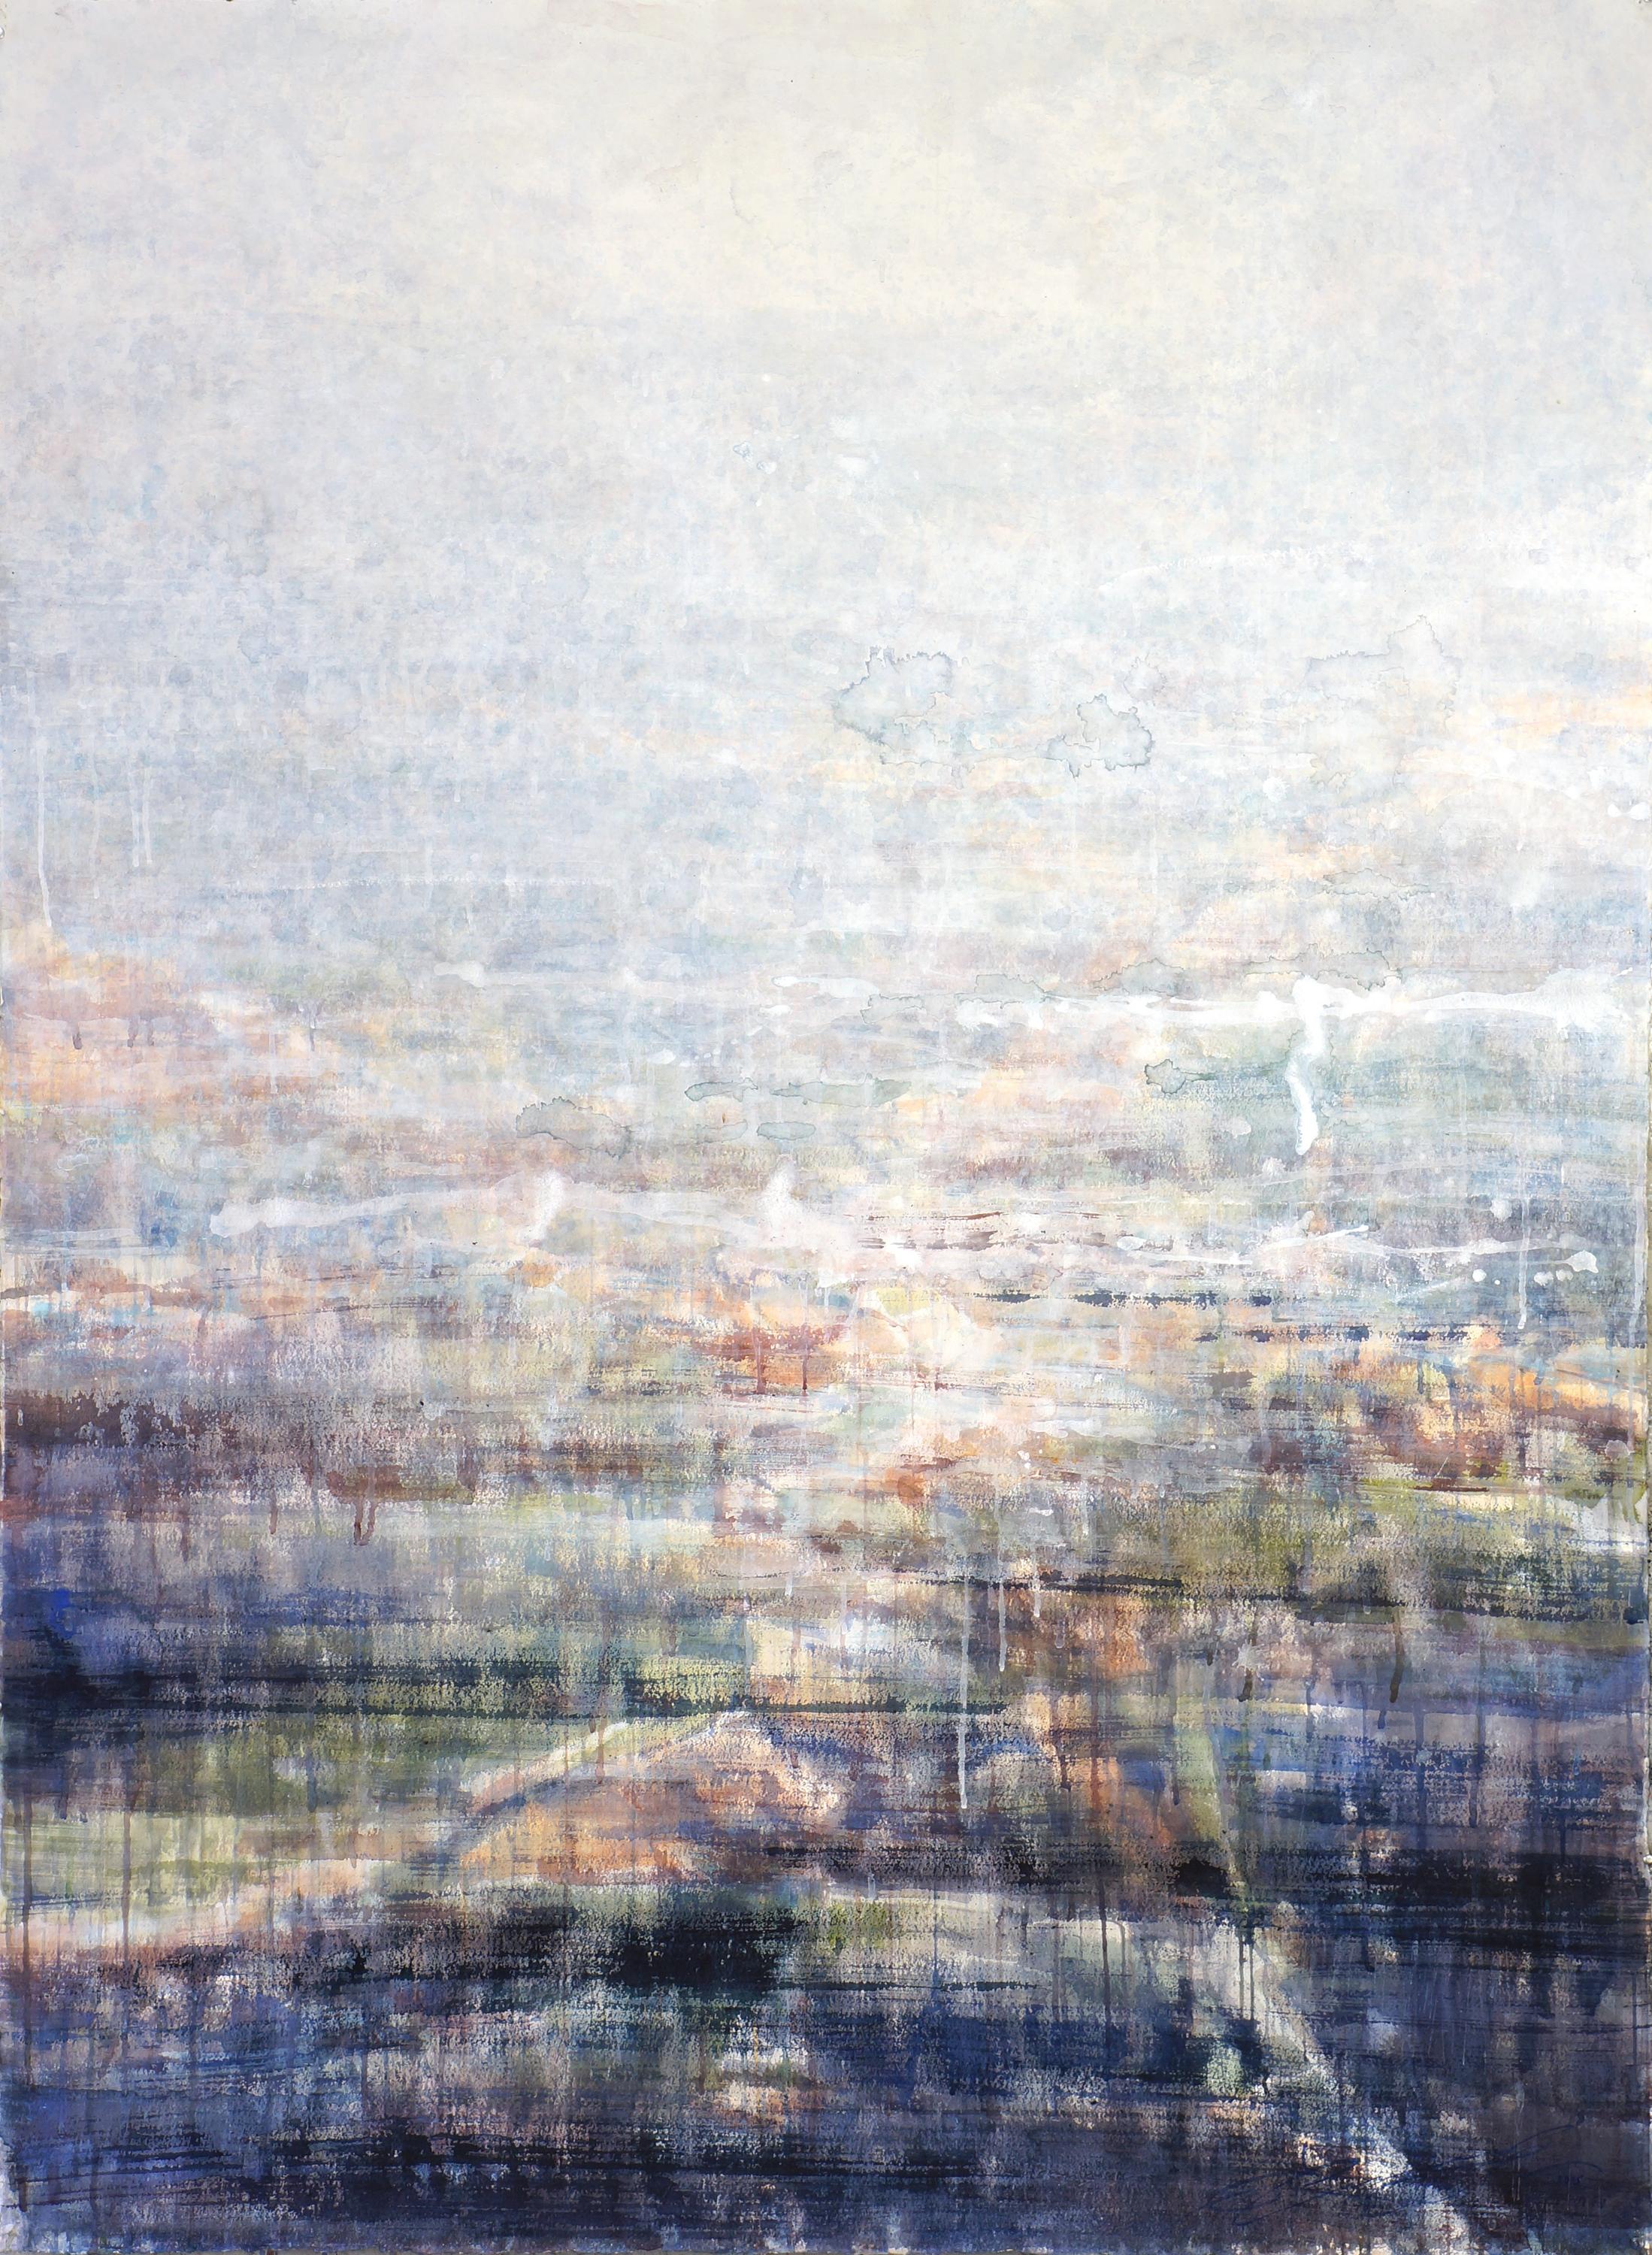 Hazy Landscape 1 - 21st Century, Contemporary, Landscape, Watercolor on Paper